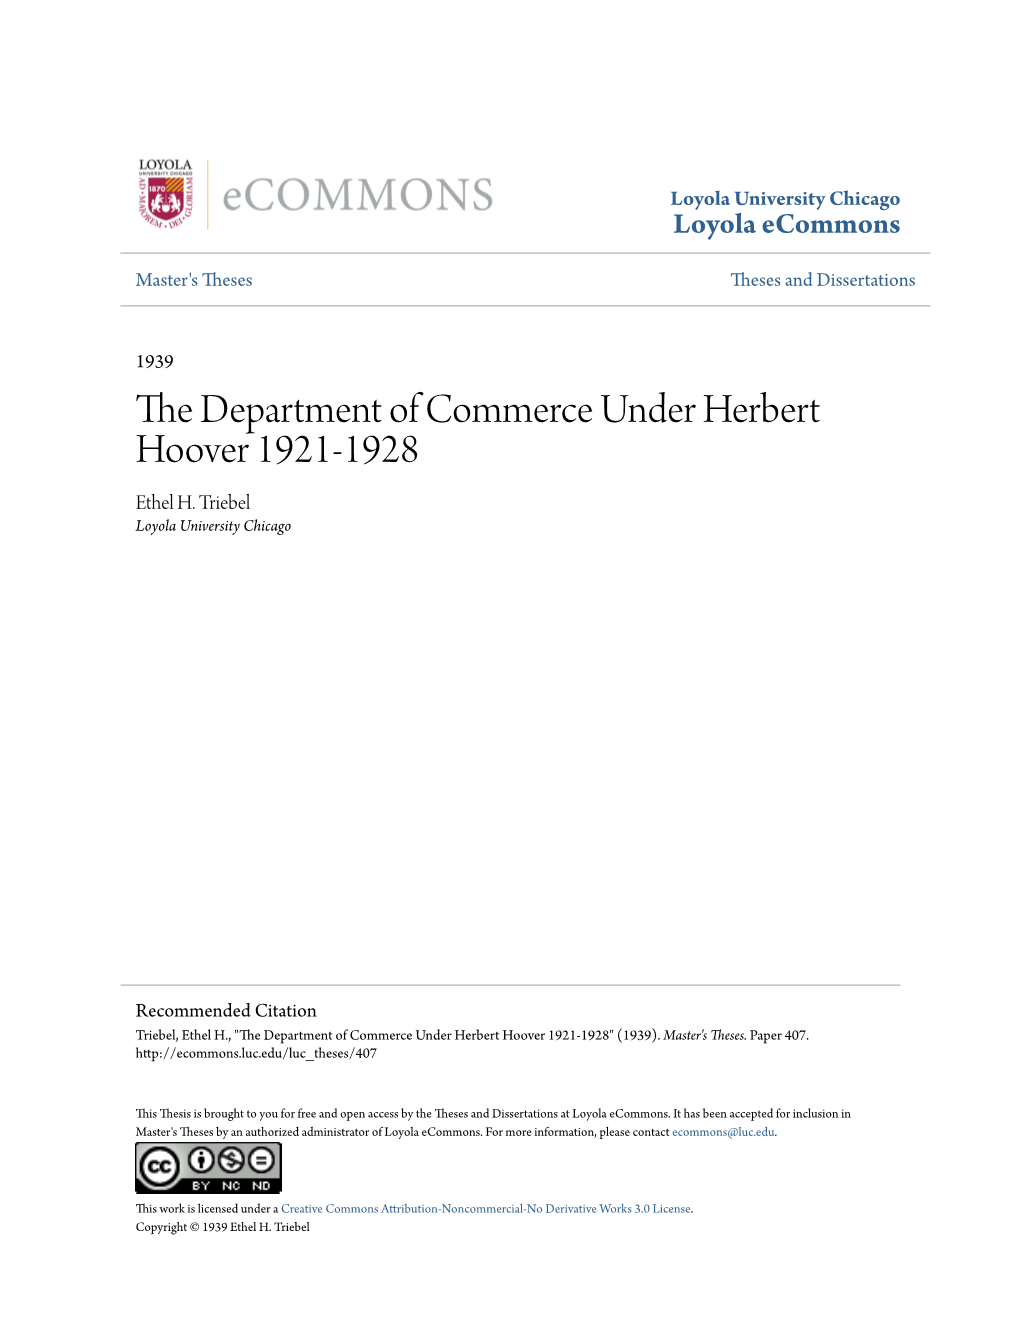 The Department of Commerce Under Herbert Hoover 1921-1928